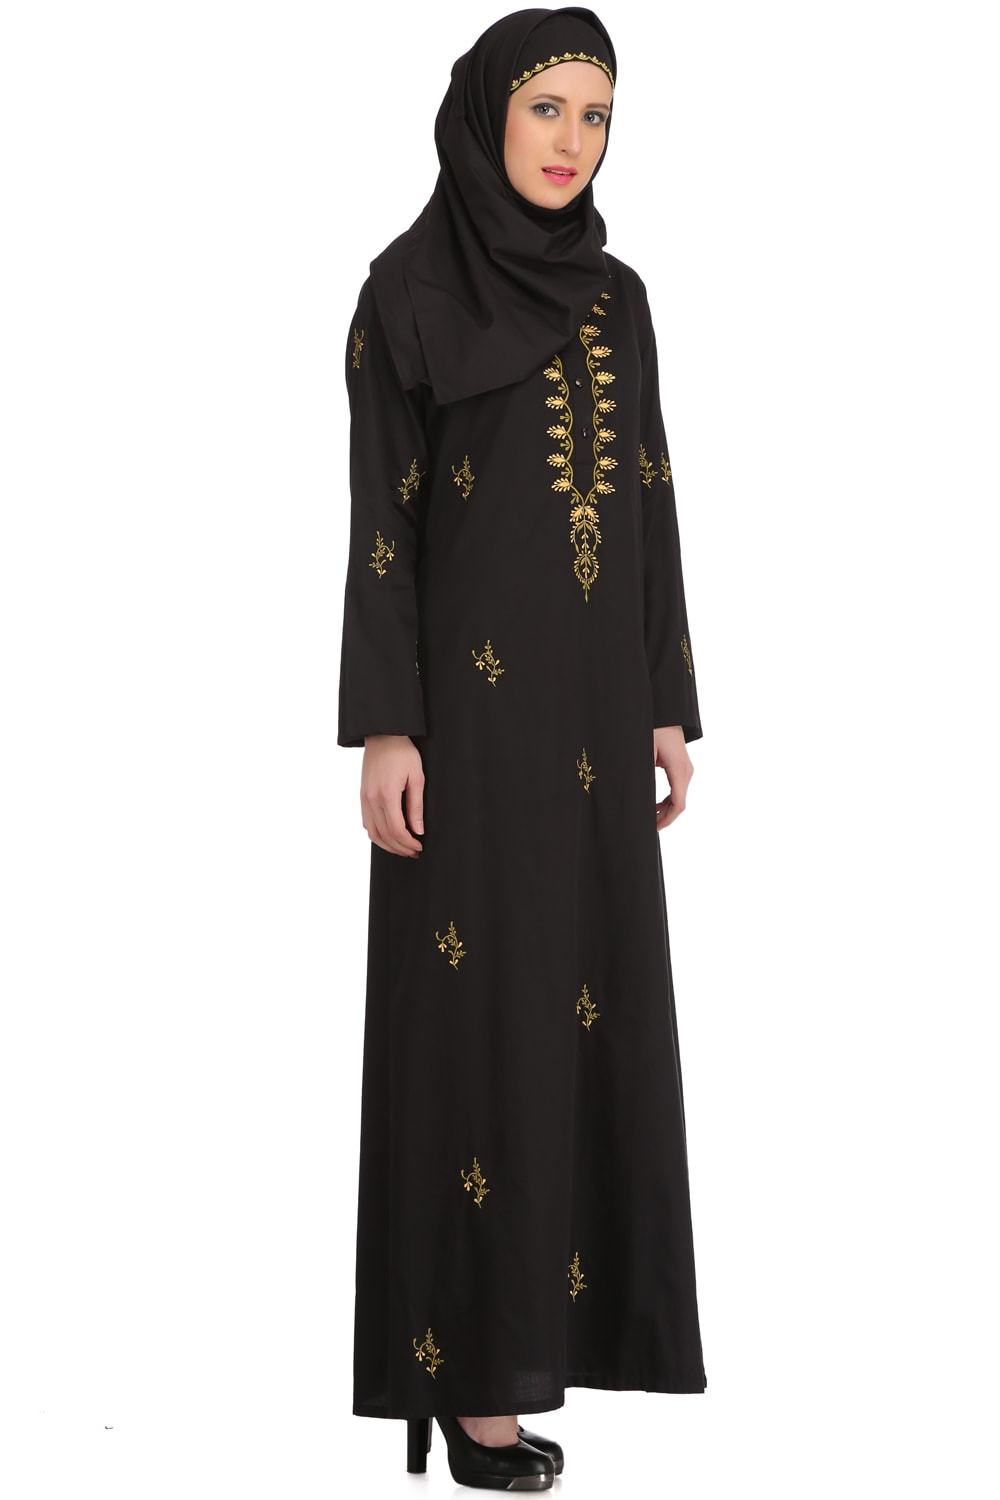 Ablah Black Cotton Abaya Design